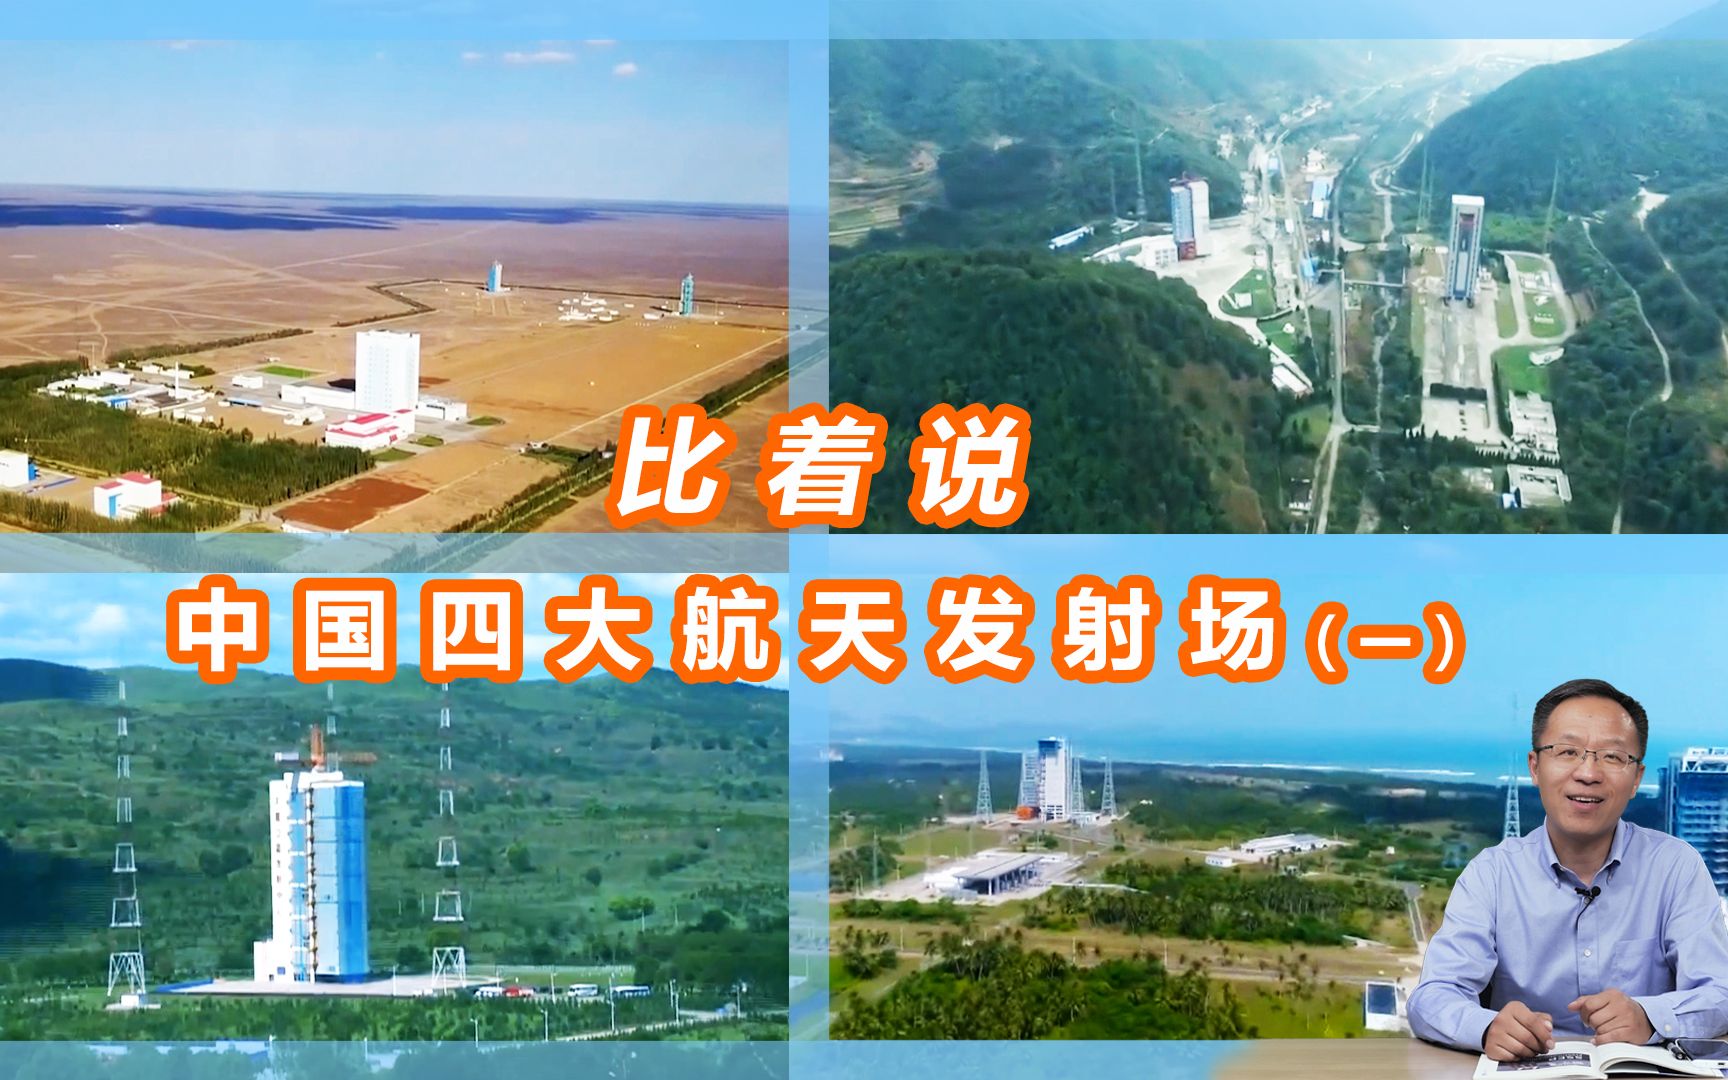 比较着说:中国四大航天发射场(一)!